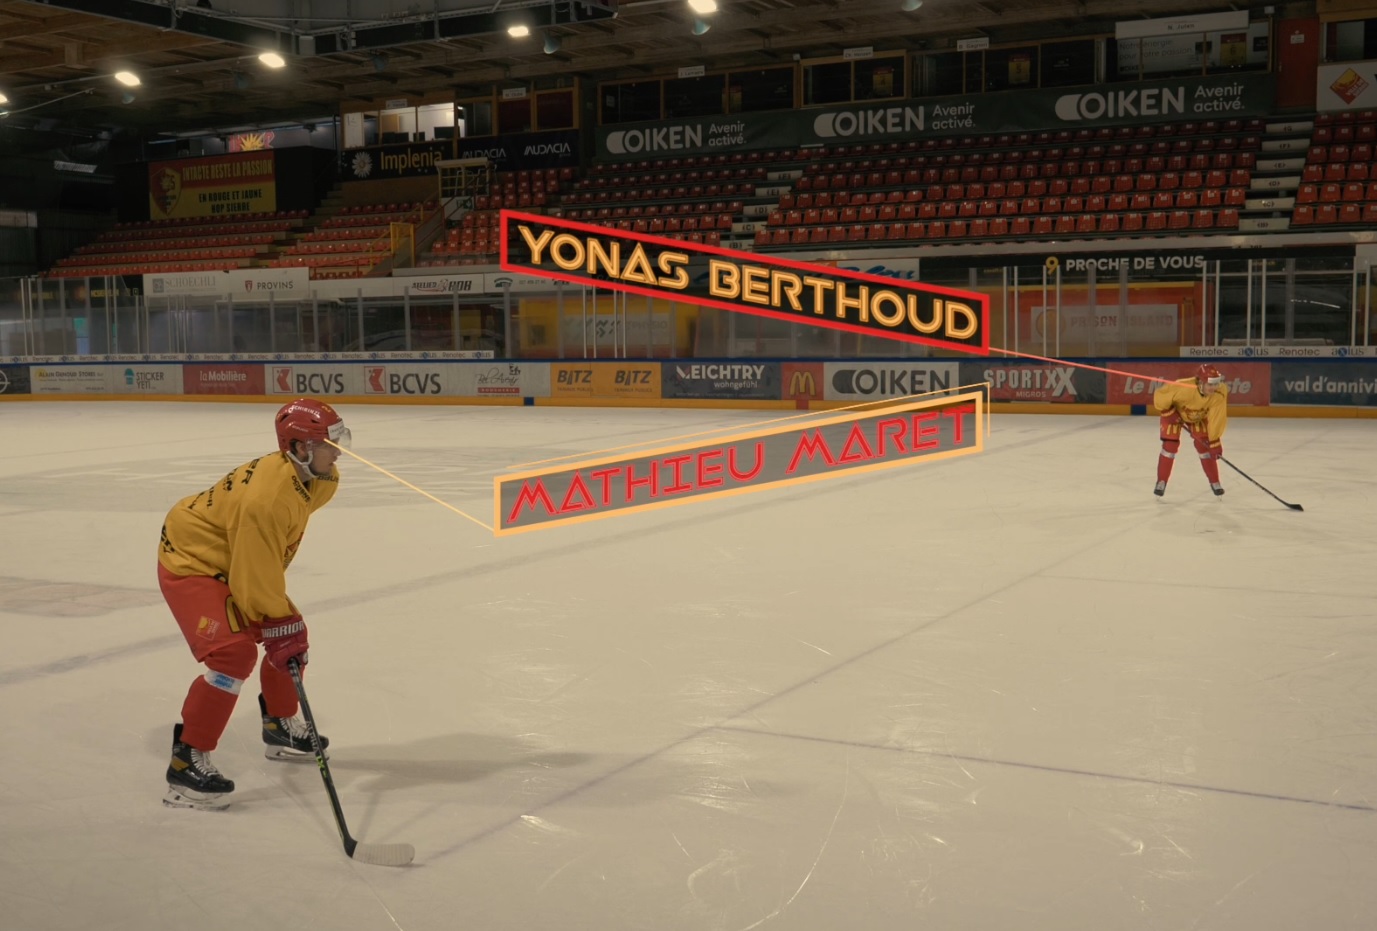 LTDS - Les hockeyeurs chablaisiens Yonas Berthoud et Mathieu Maret font la paire au HC Sierre